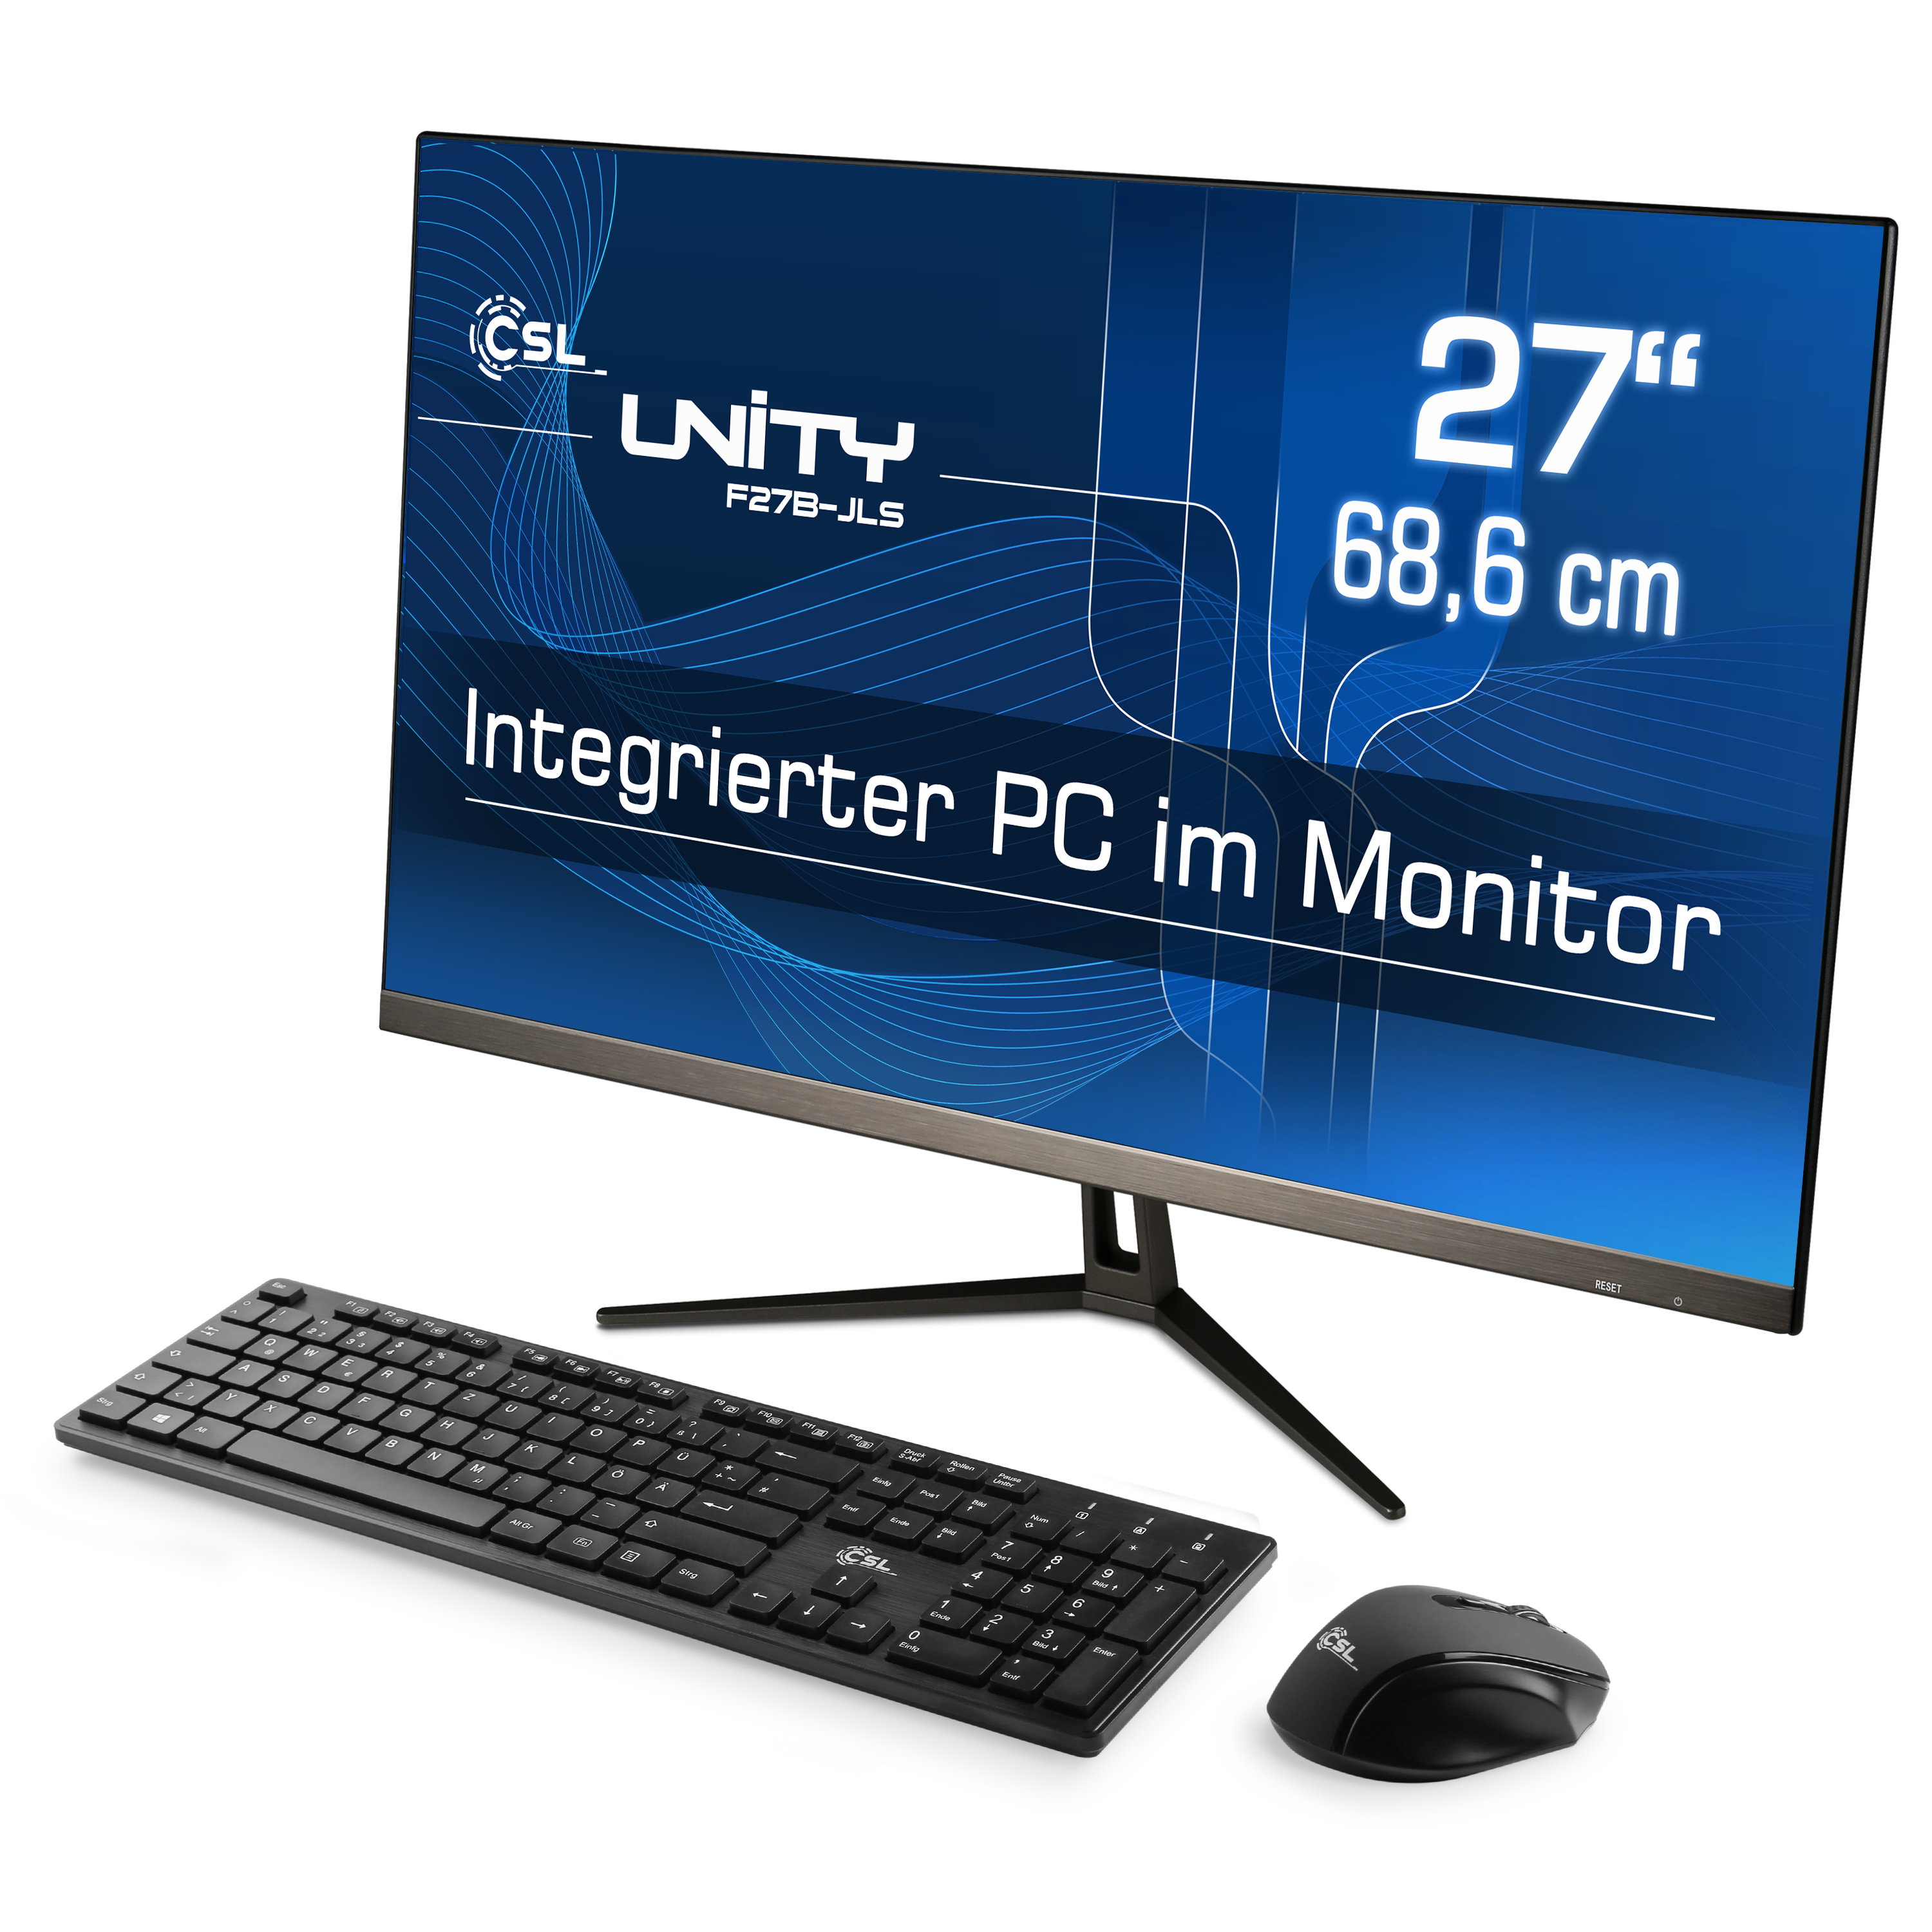 mit Unity schwarz UHD 256 / Intel® CSL 27 SSD, Display, GB / GB Pentium / RAM Graphics, Zoll 10 16 GB F27B-JLS GB Win 16 256 Home, RAM, All-in-One-PC